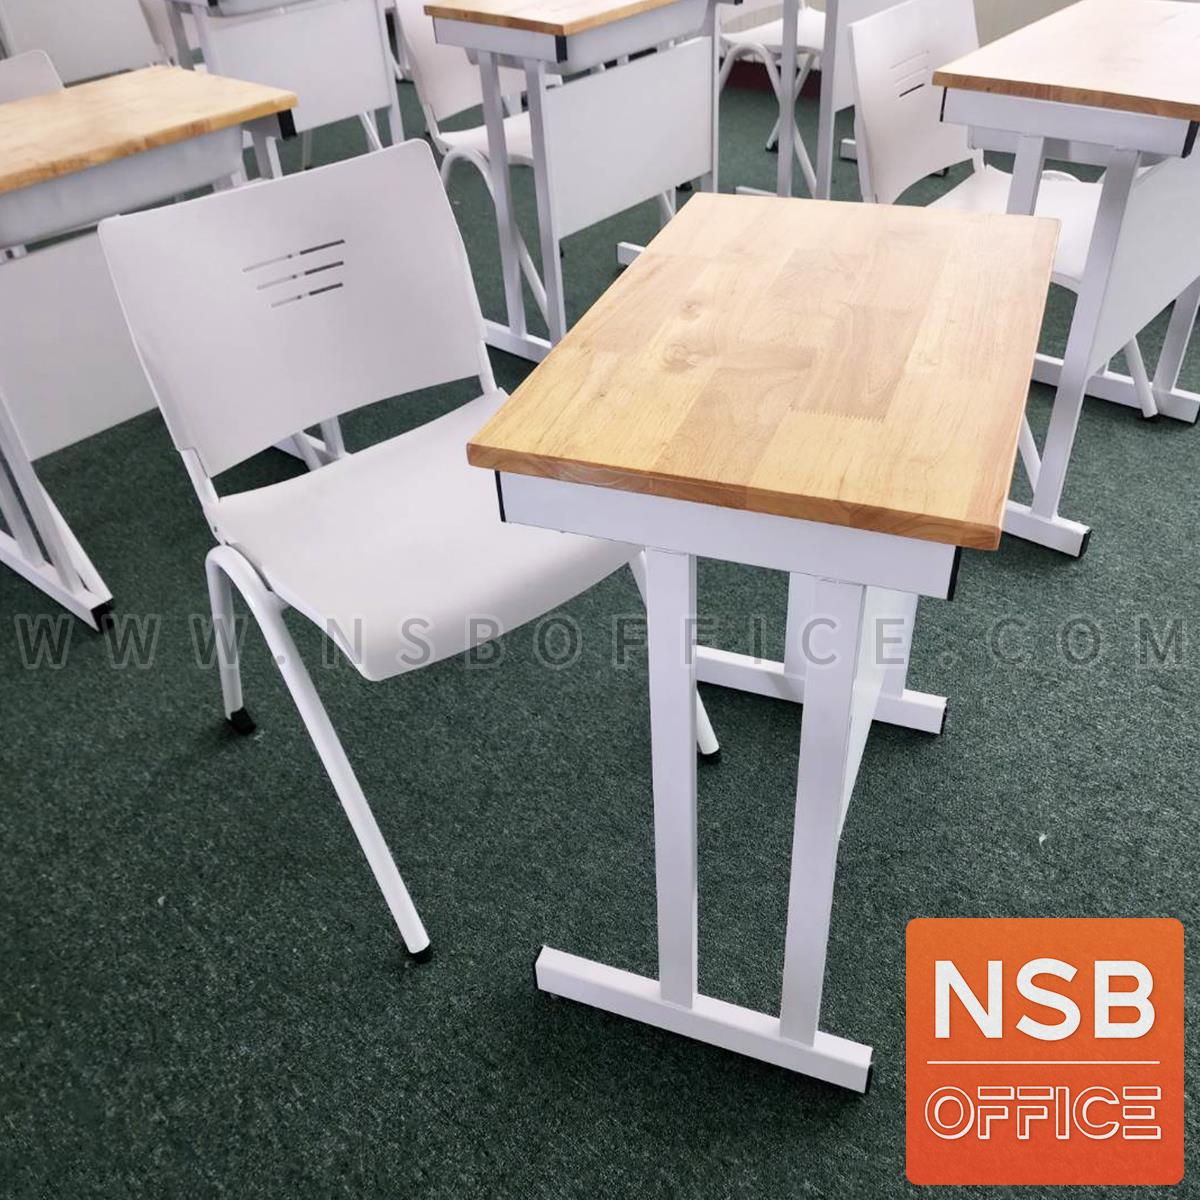 A17A101:ชุดโต๊ะและเก้าอี้นักเรียน รุ่น Neville (เนวิลล์)  มีช่องเก็บหนังสือ